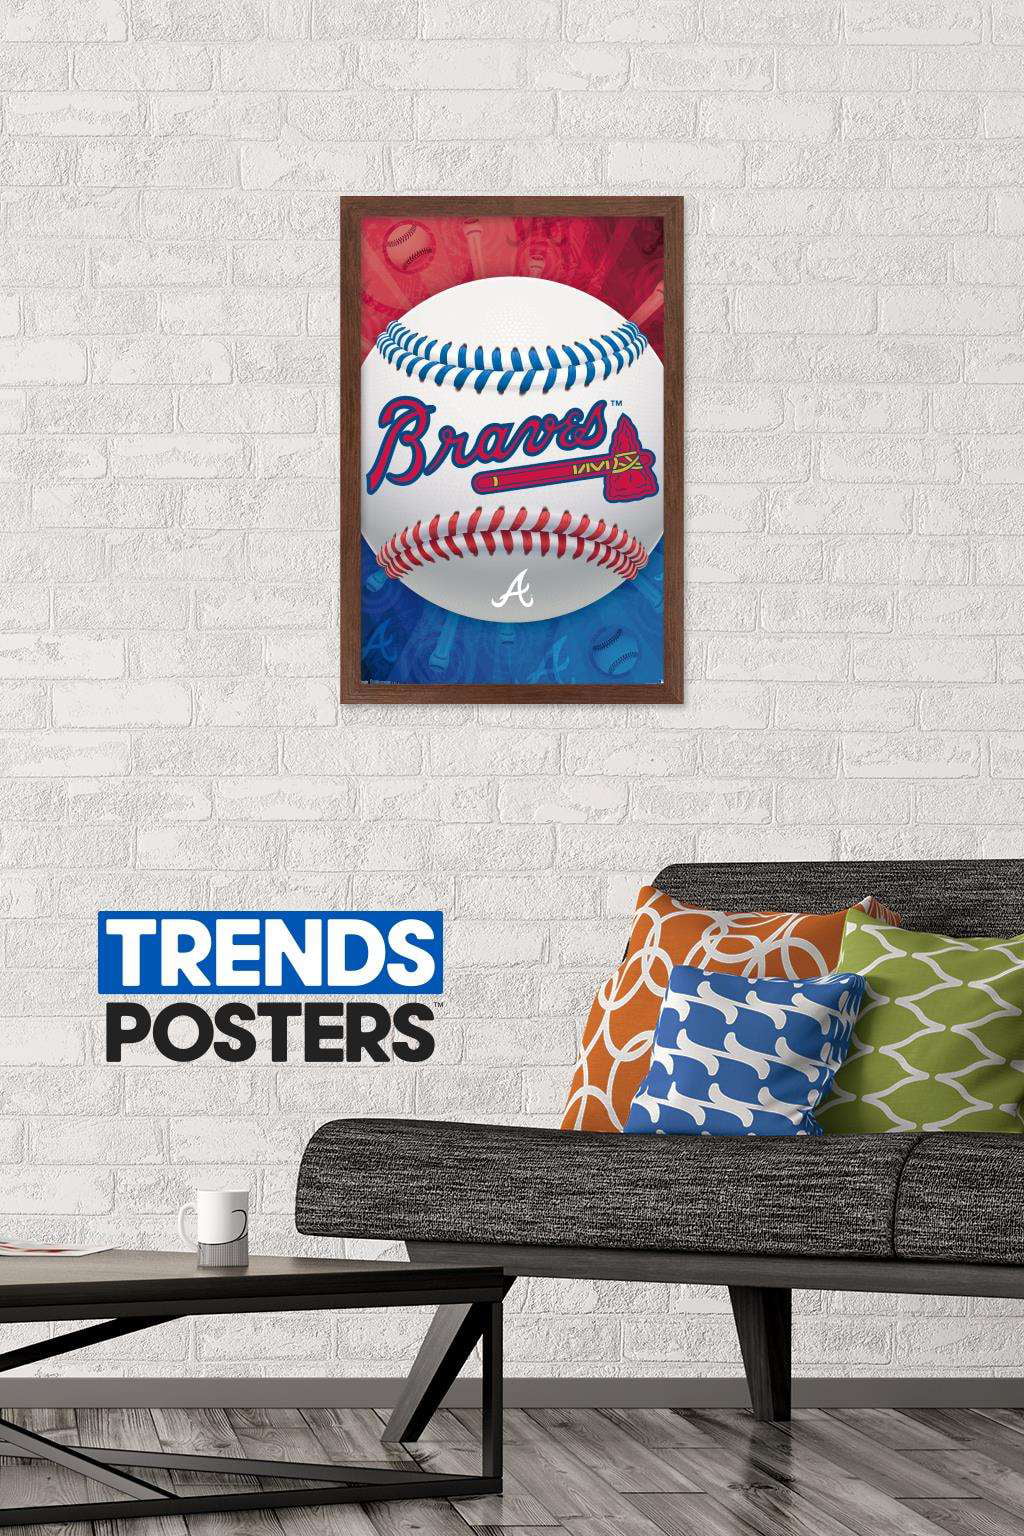 MLB Atlanta Braves - Logo 22 Wall Poster, 14.725 x 22.375 